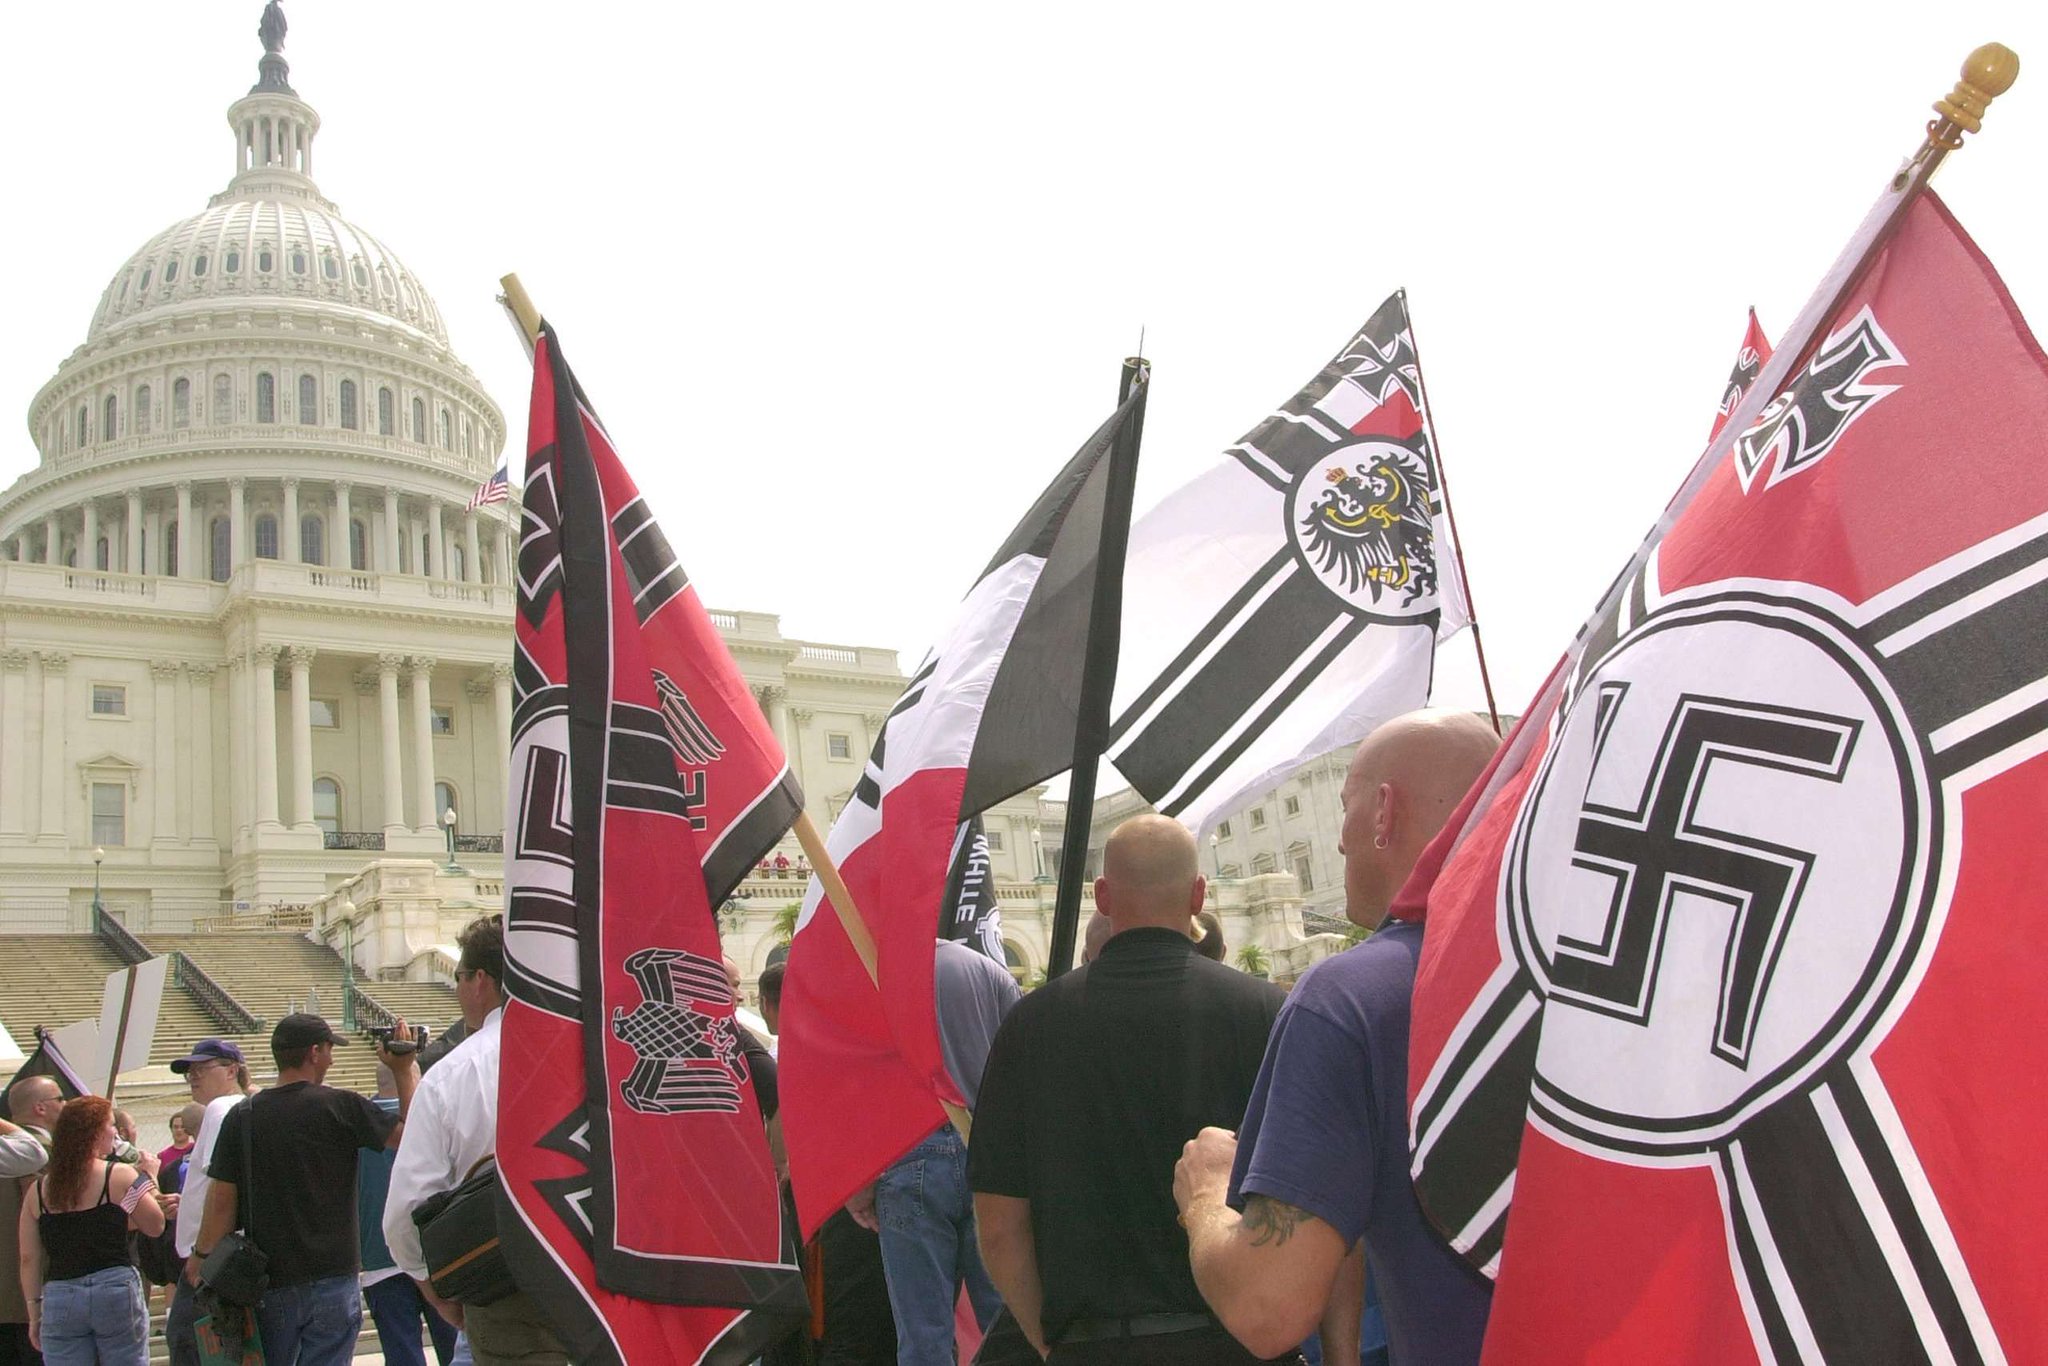 3 национал. Нацистская партия США. Национал Социалистическая партия США. Флаг неонацистов США. Американские нацисты.